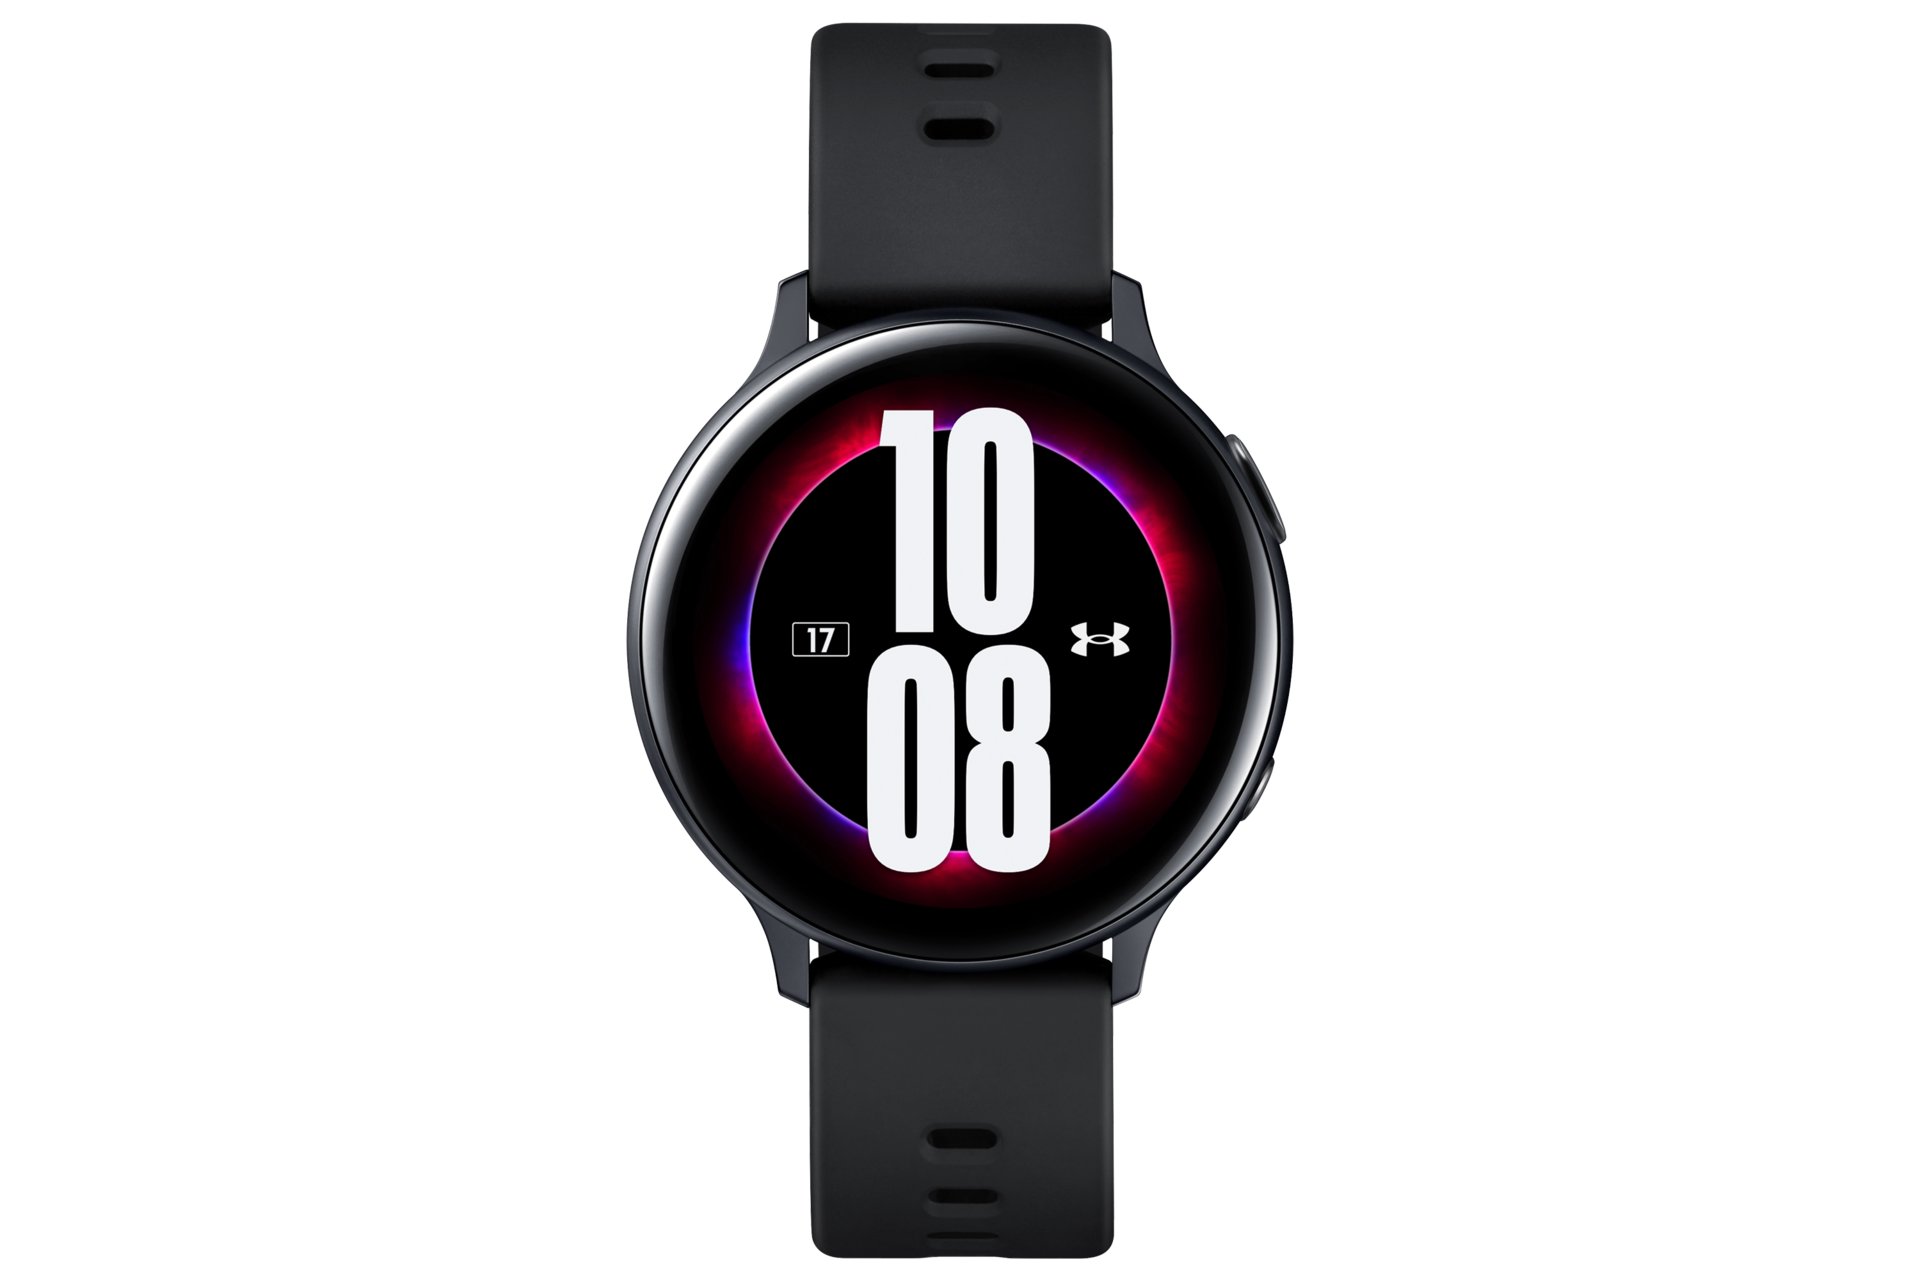 Galaxy Watch Active2: Chiếc đồng hồ thông minh Galaxy Watch Active2 không chỉ là một phụ kiện thời trang mà còn là một trợ thủ đắc lực giúp bạn theo dõi sức khỏe và sinh hoạt hàng ngày. Hãy trải nghiệm những tính năng thông minh mà chiếc đồng hồ này mang lại.